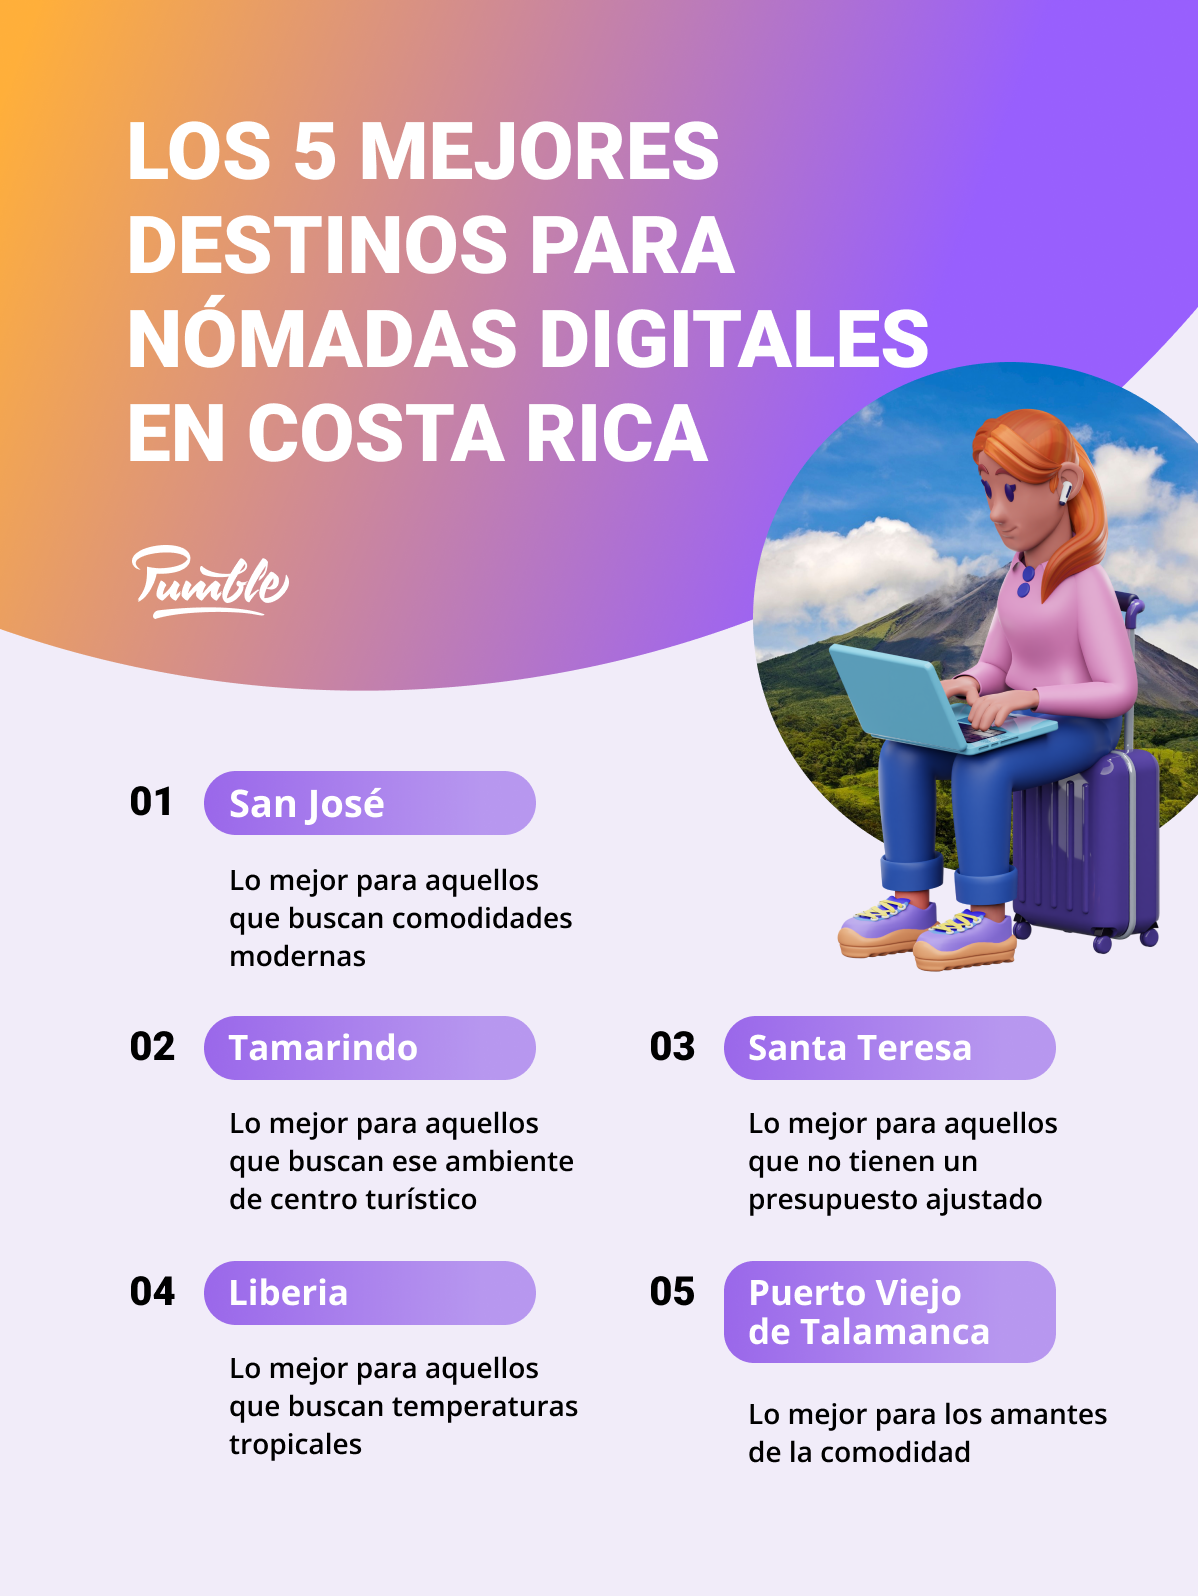 Los 5 mejores destinos para nómadas digitales en Costa Rica